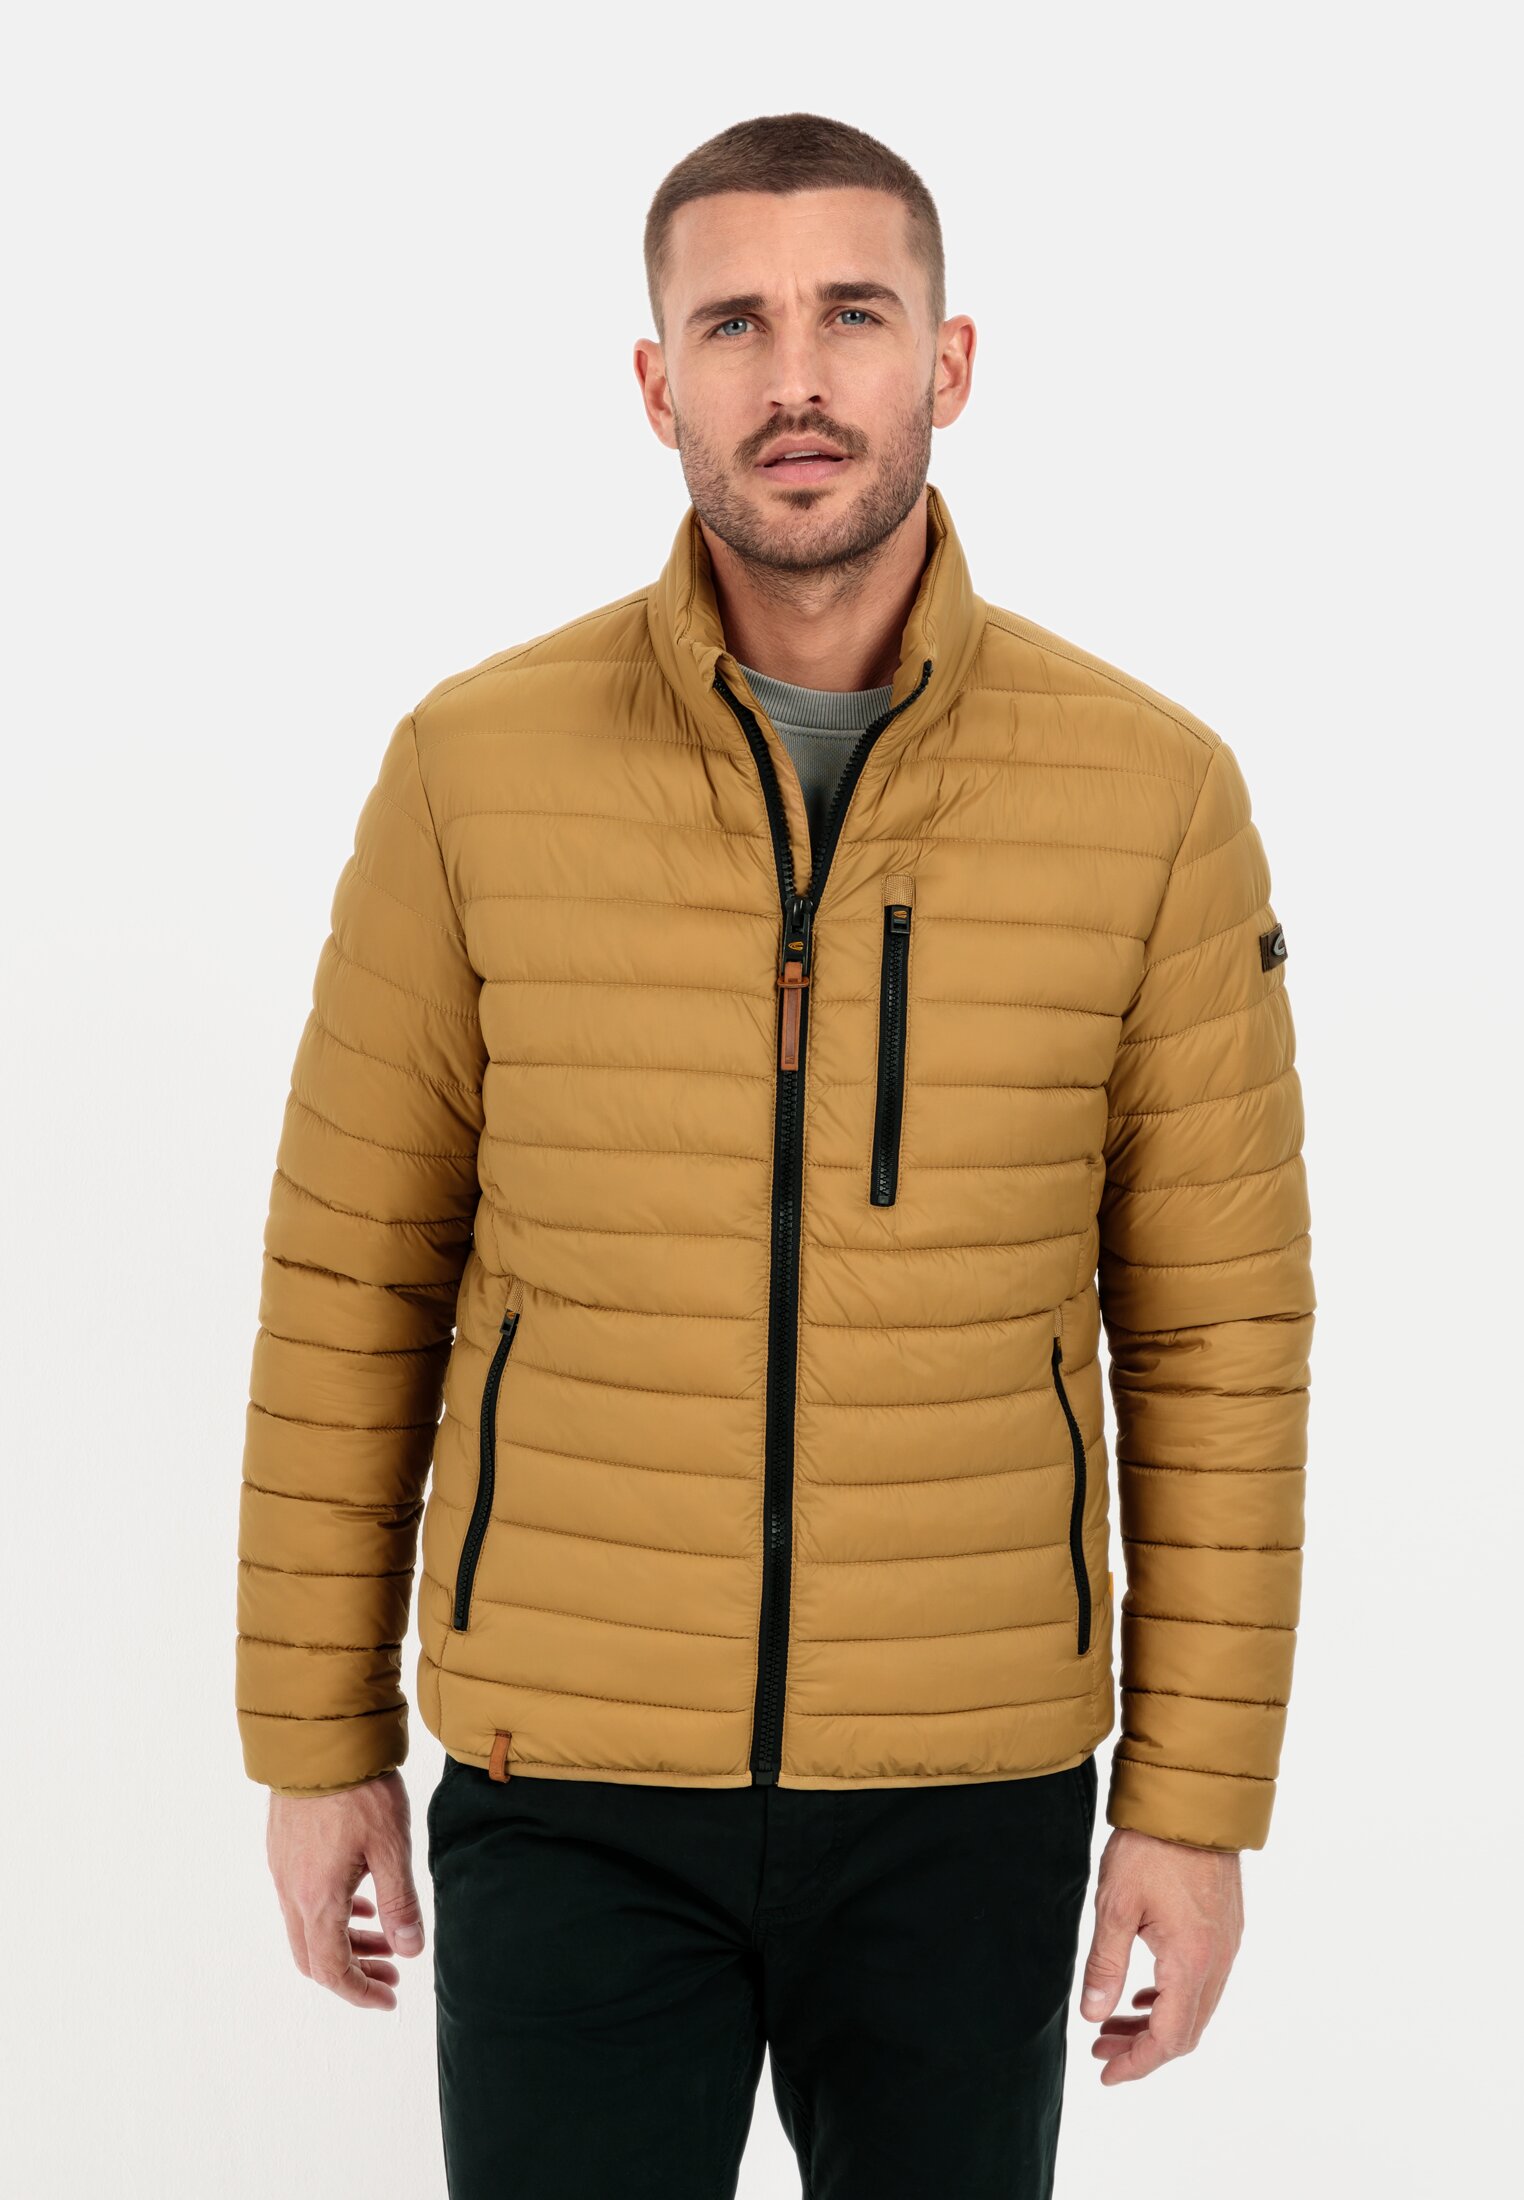 Quilted jacket for Herren in Beige-Brown | 56